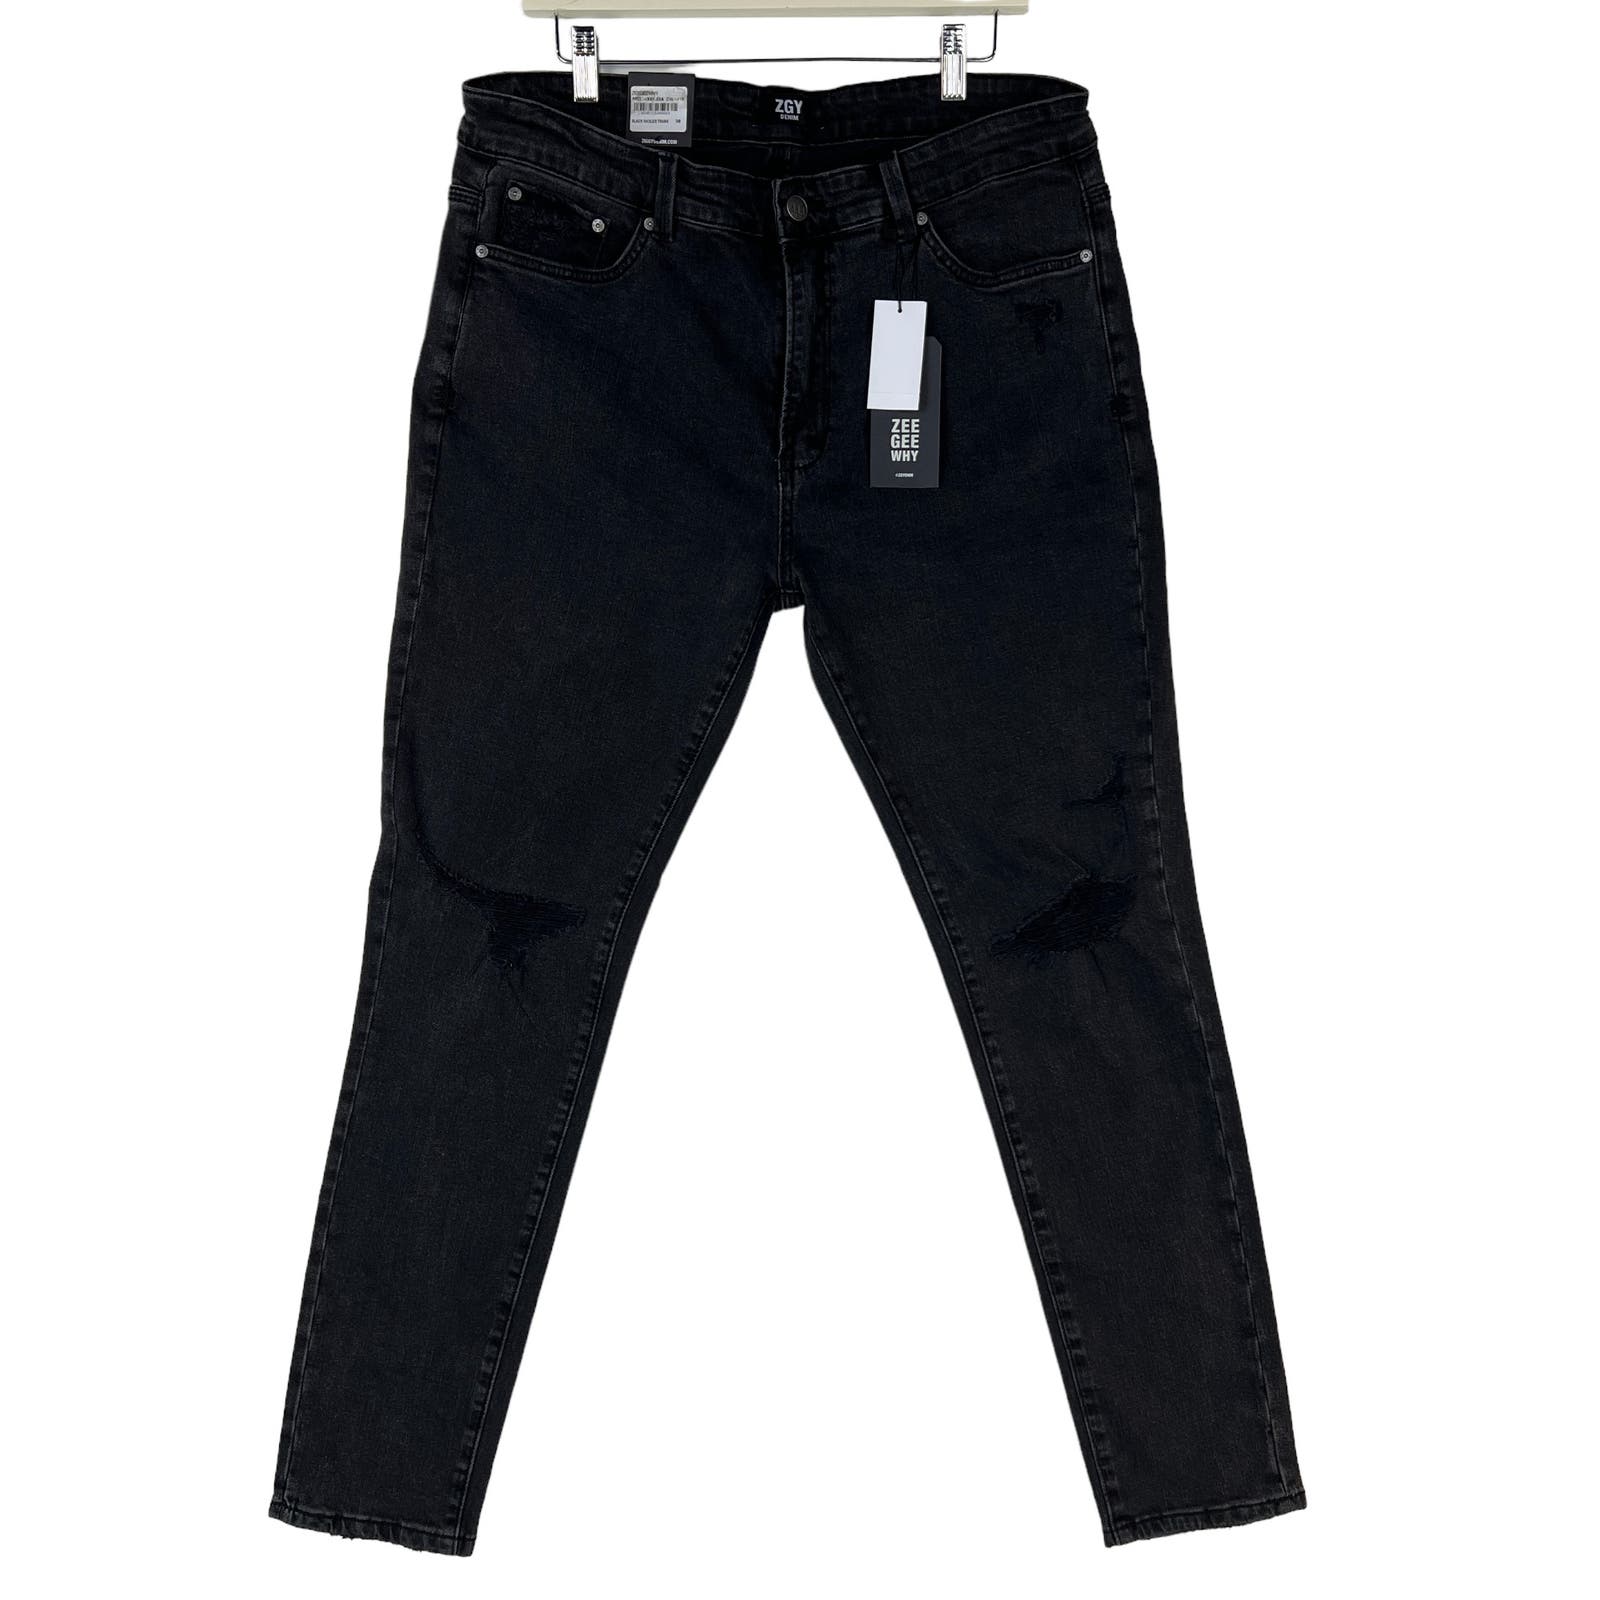 ZeeGeeWhy Men Black Ripped Jeans US 8 Pipes Skinny Crop